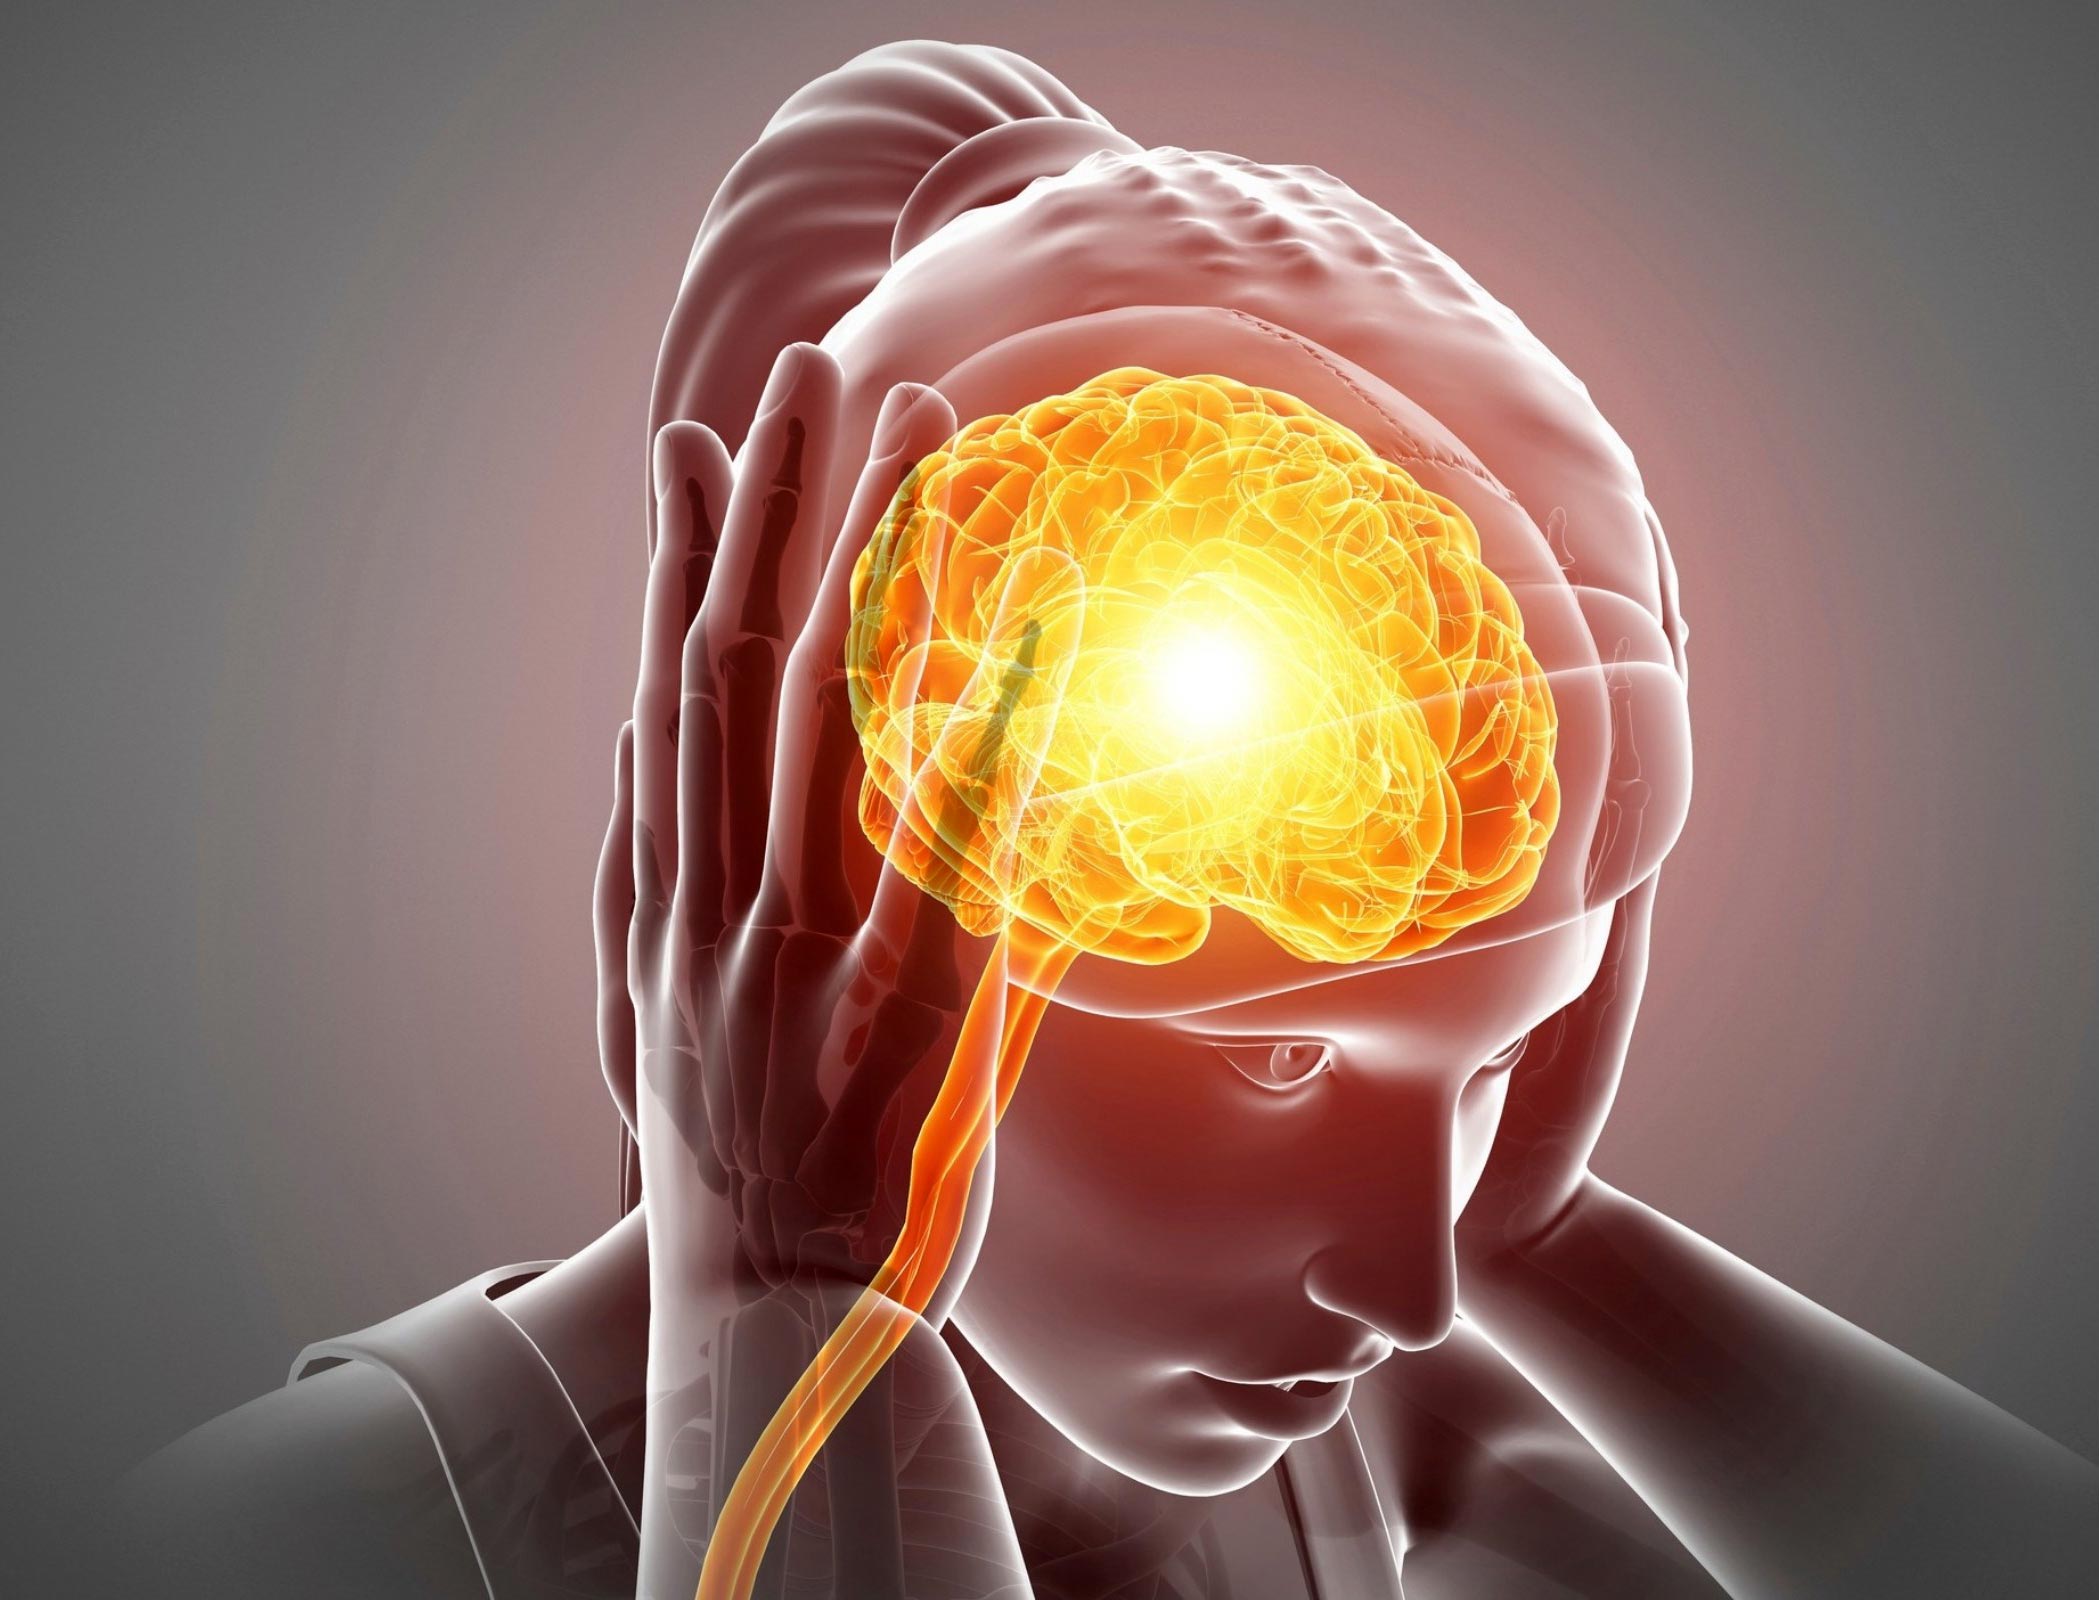 What Causes Headaches During a Cough?